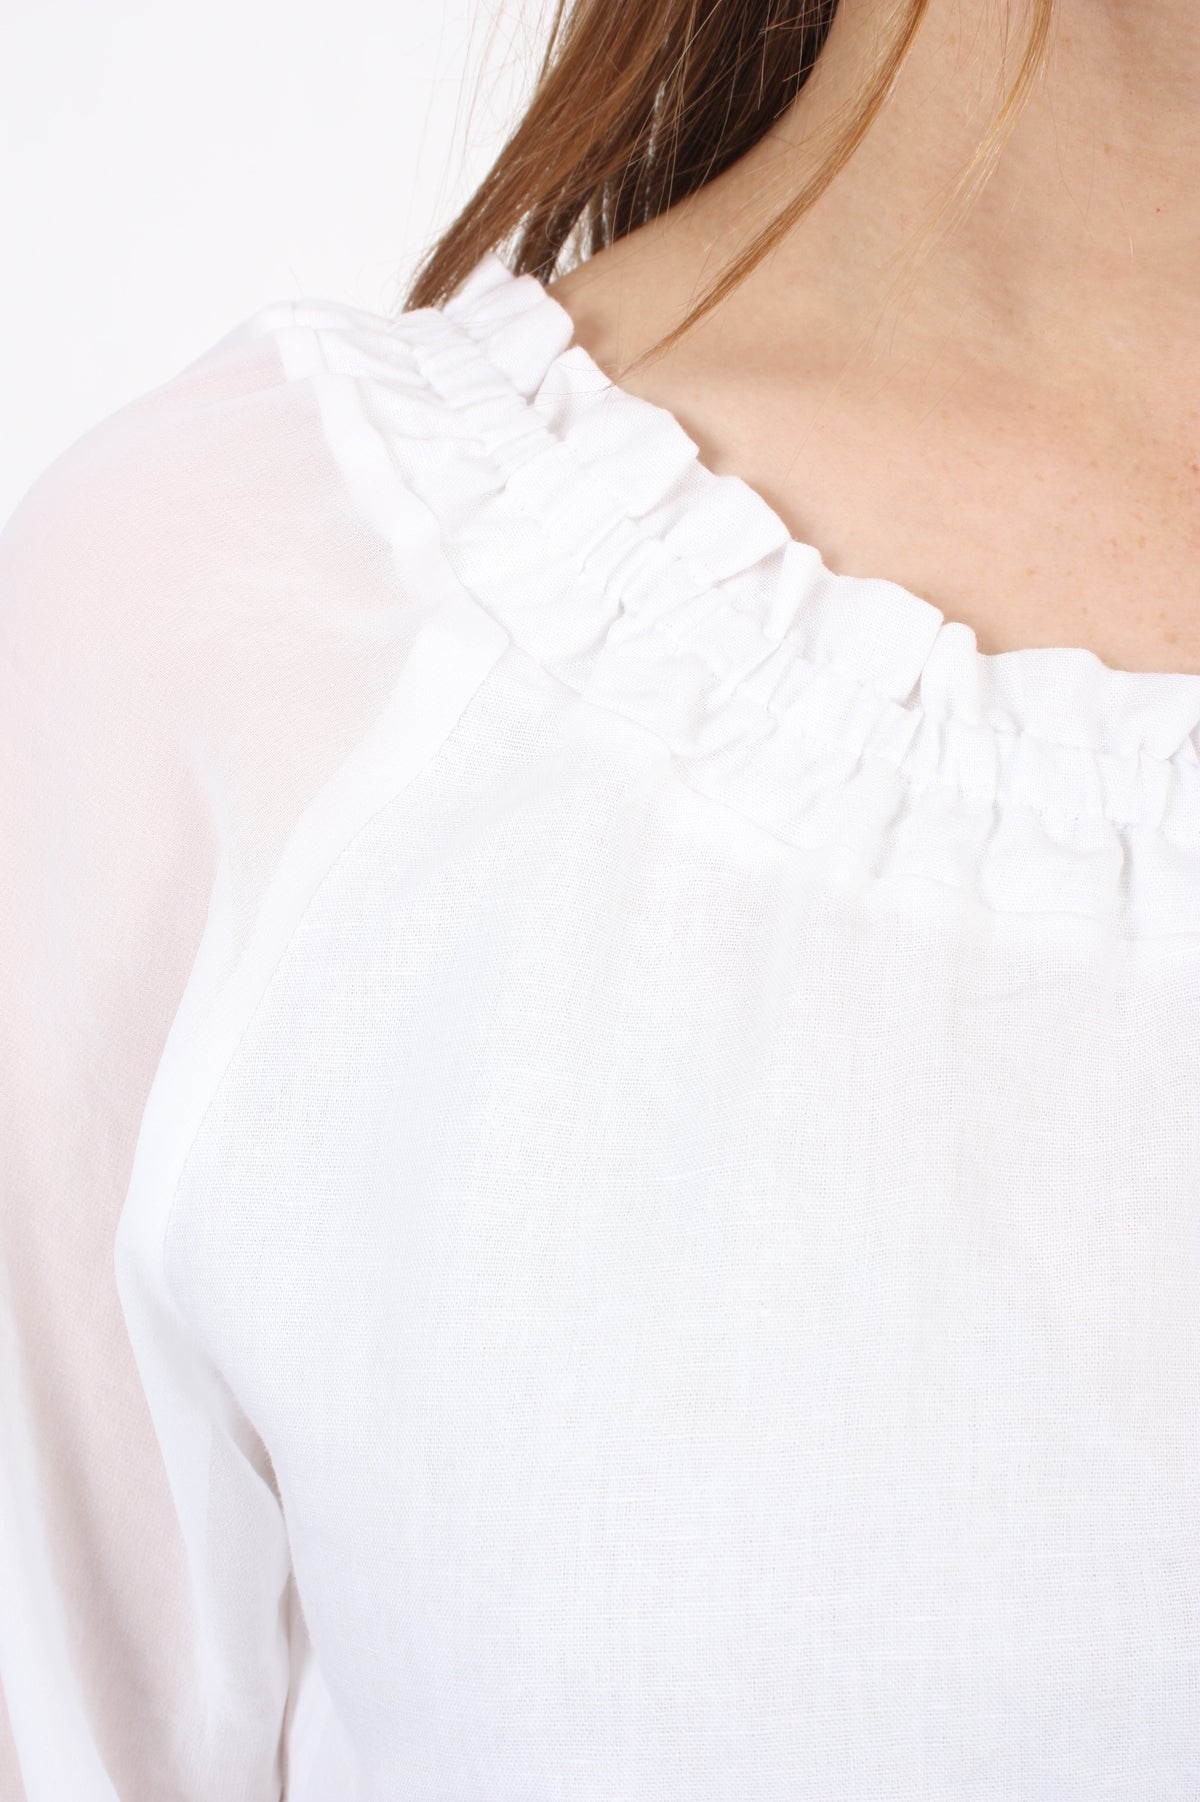 LuLu Top - White Long Sleeve - Pre-Order